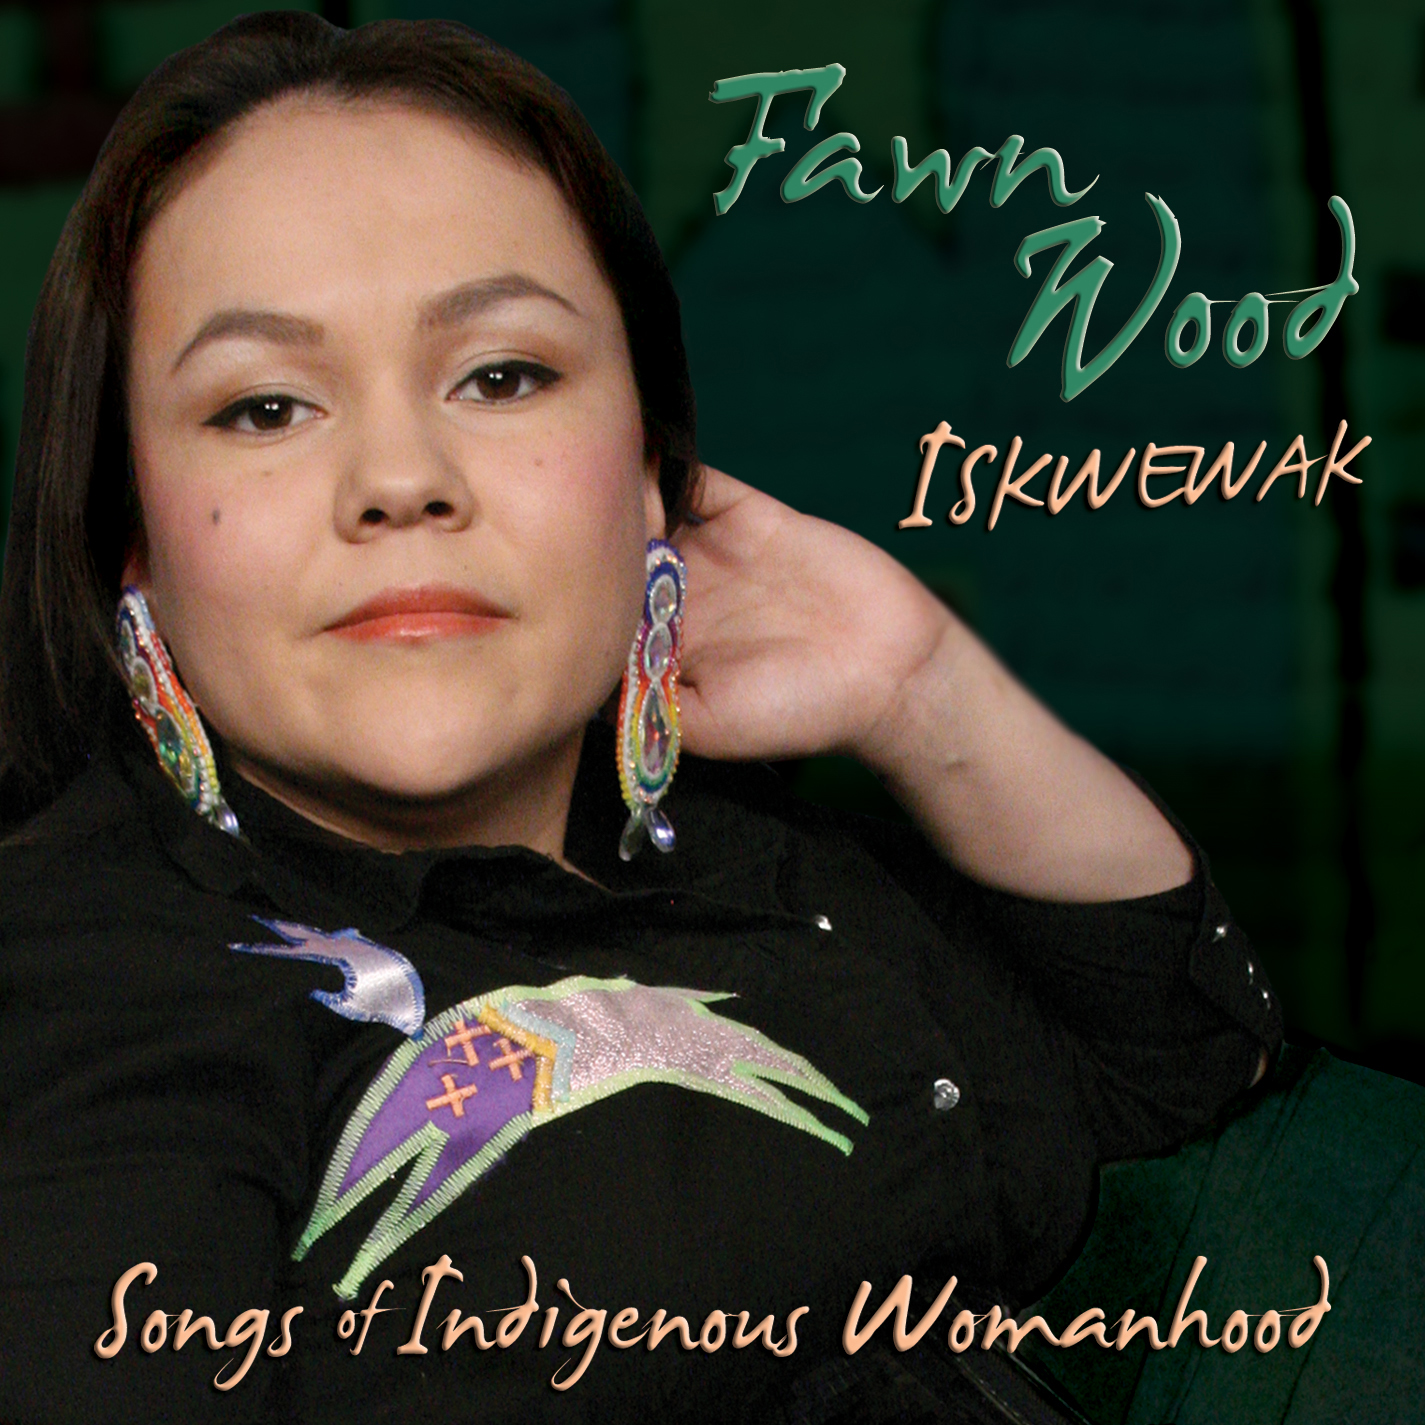 ISKWEWAK: SONGS OF INDIGENOUS WOMANHOOD